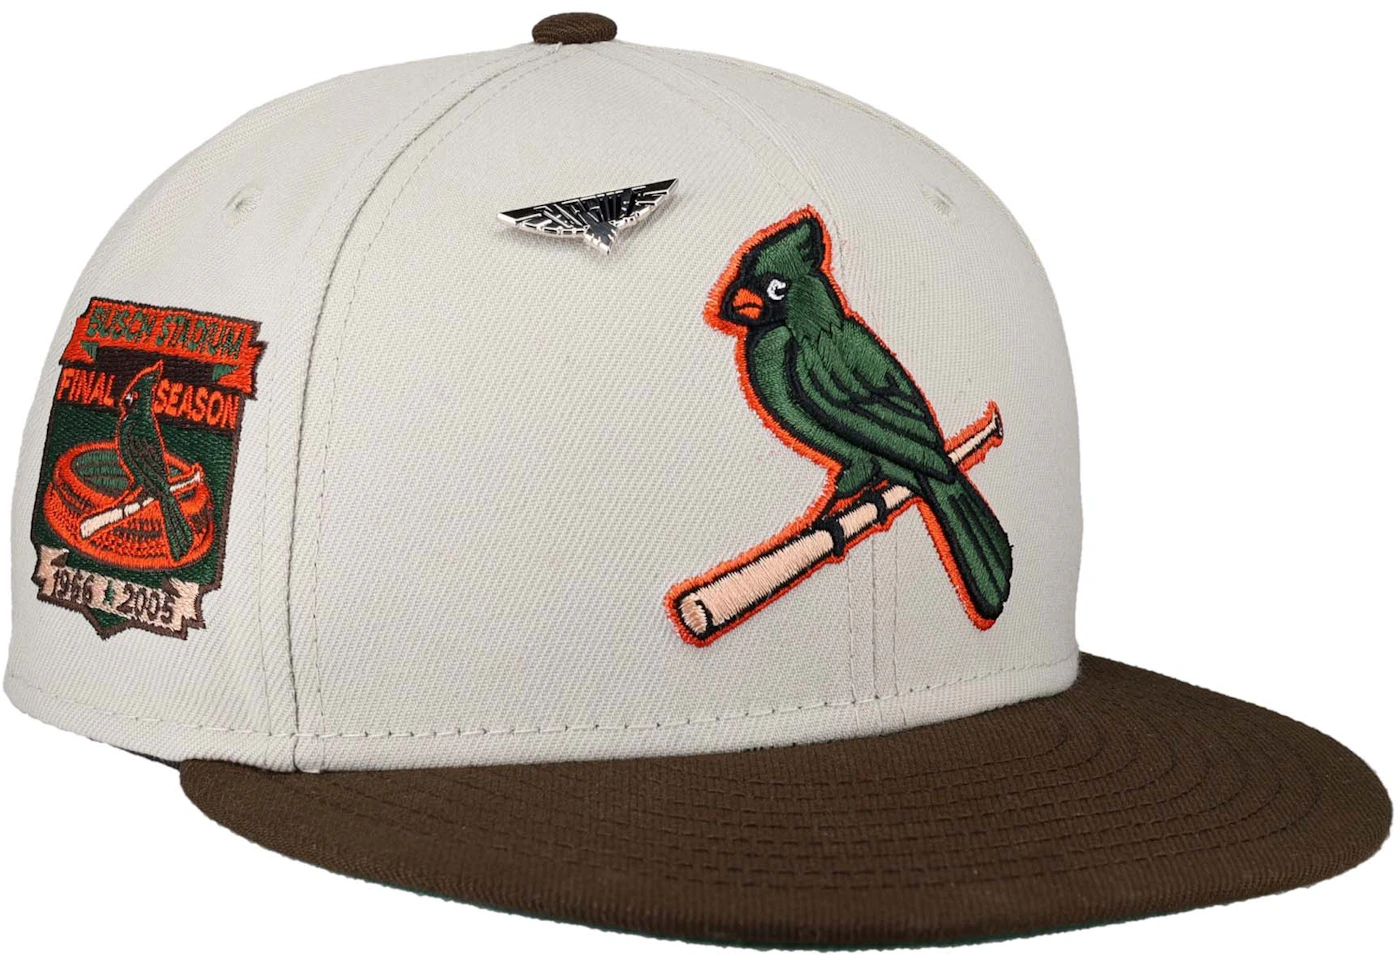 New Era St Louis Cardinals Fuji Busch Stadium Patch Jersey Hat